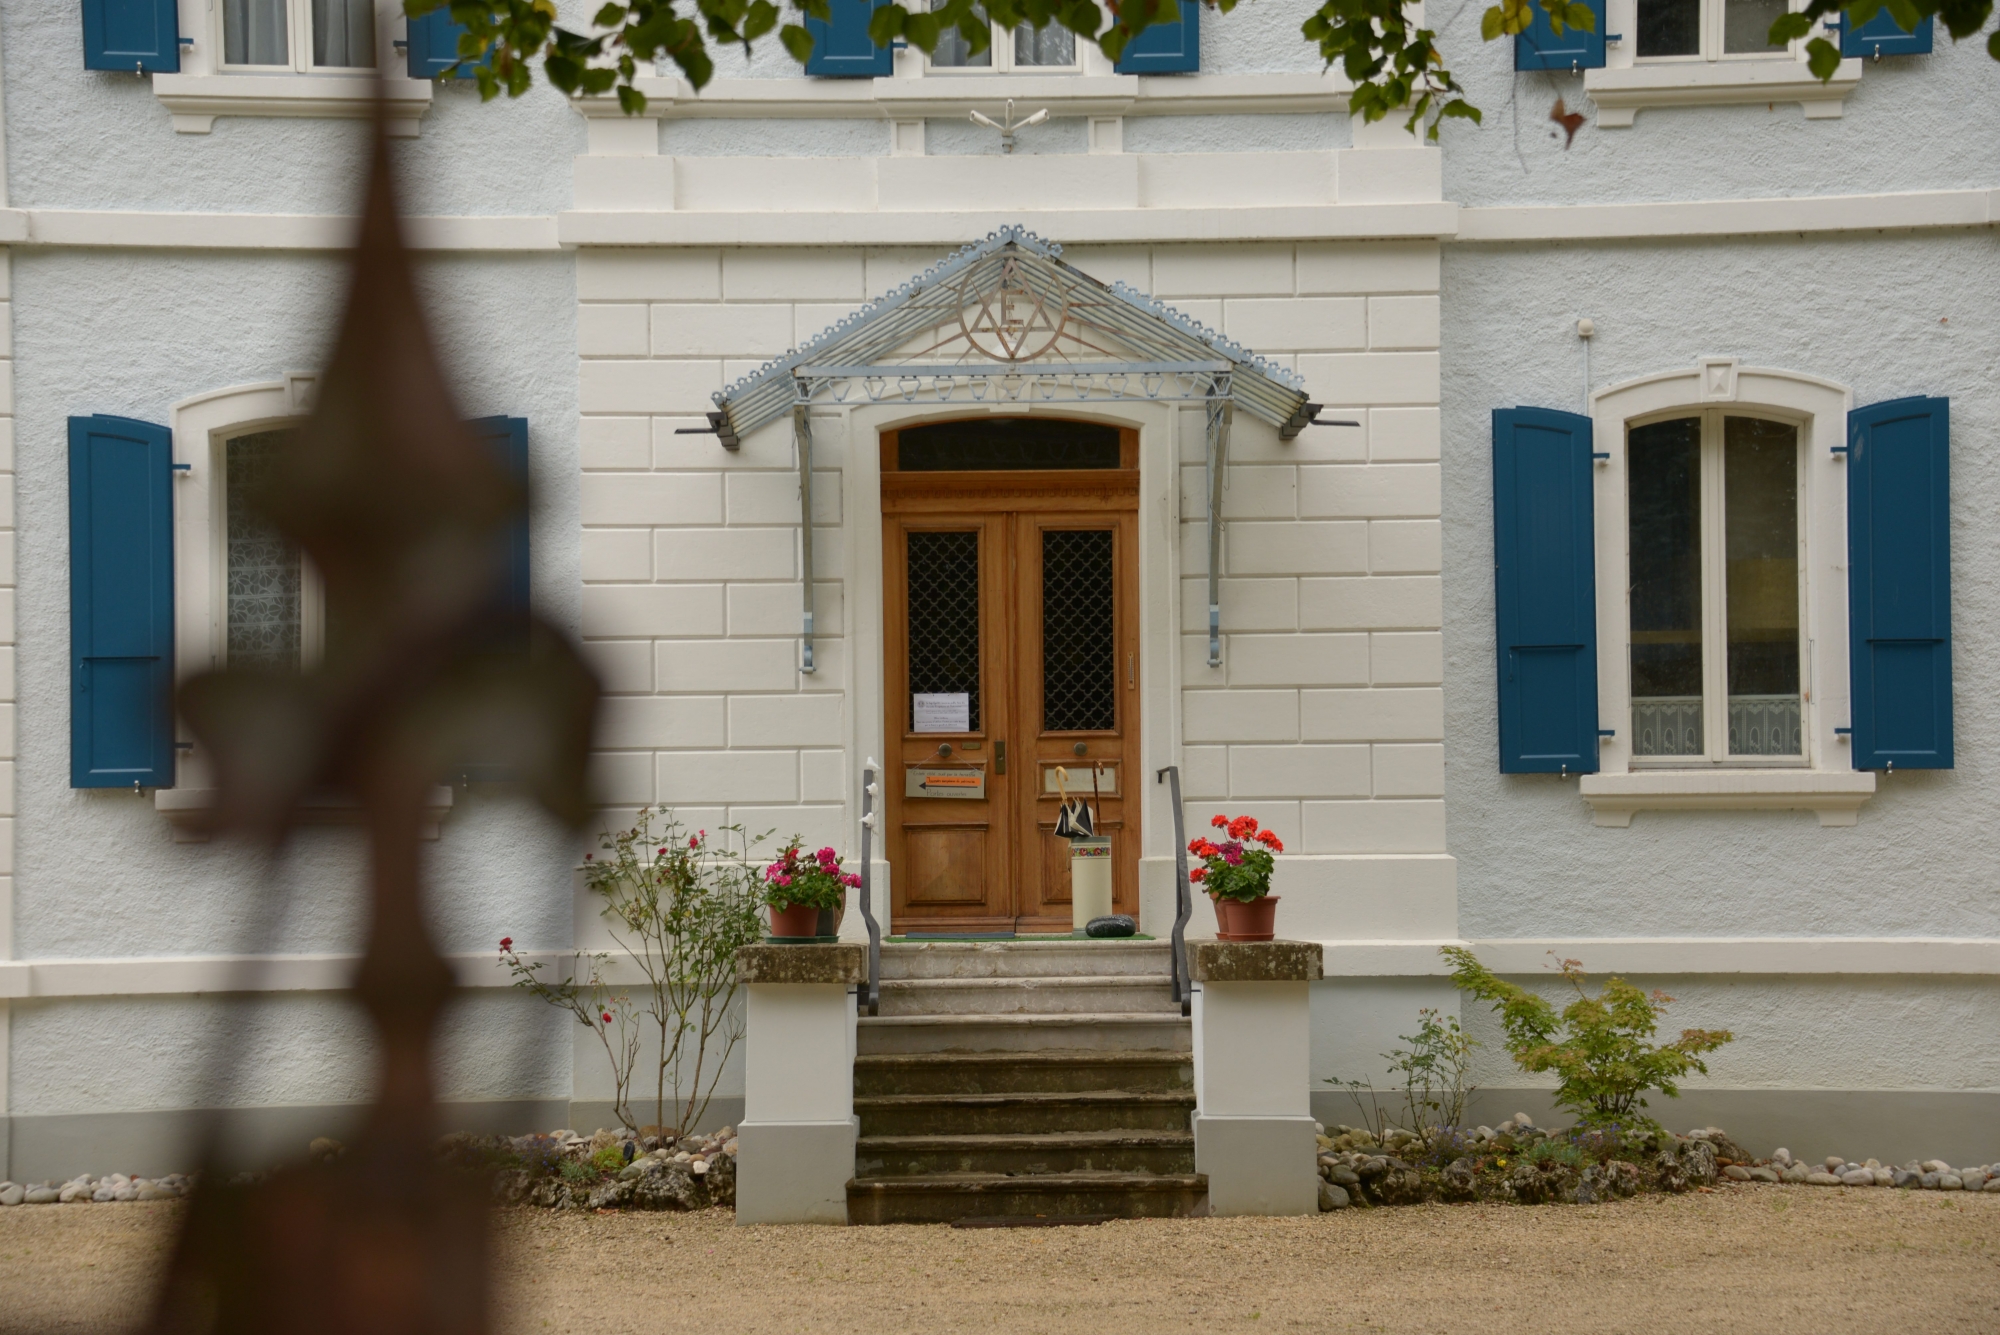 L'entrée de la maison bâtie par les francs-maçons de Fleurier. On y distingue plusieurs symboles juste au dessus de la porte d'entrée.